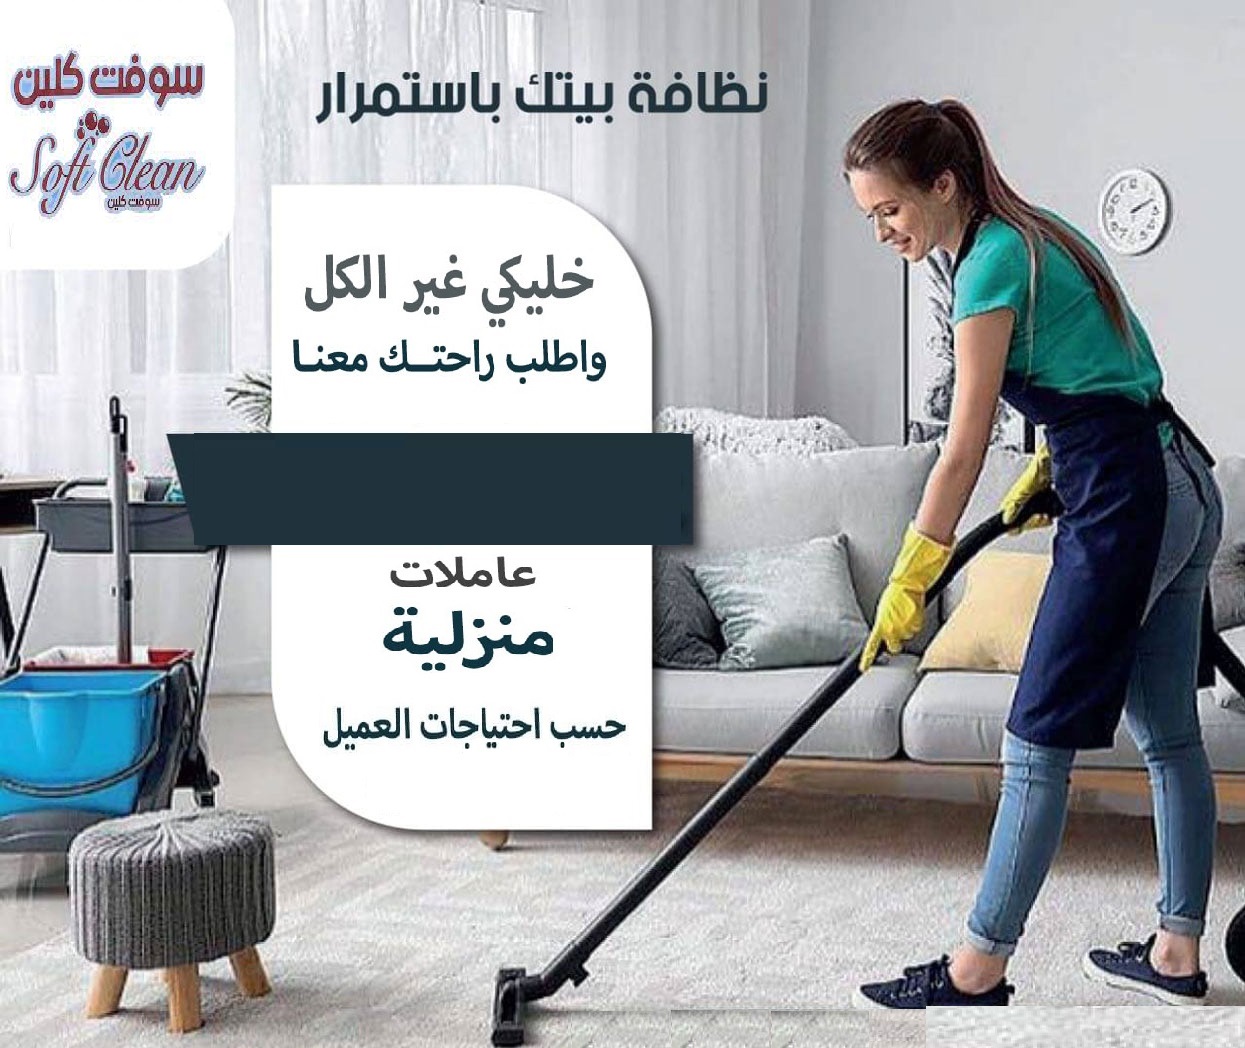 مؤسسة سوفت كلين للتنظيف والضيافة بنظام اليومي  إختاري خدمة للتنظيف المنزلي اليومي  